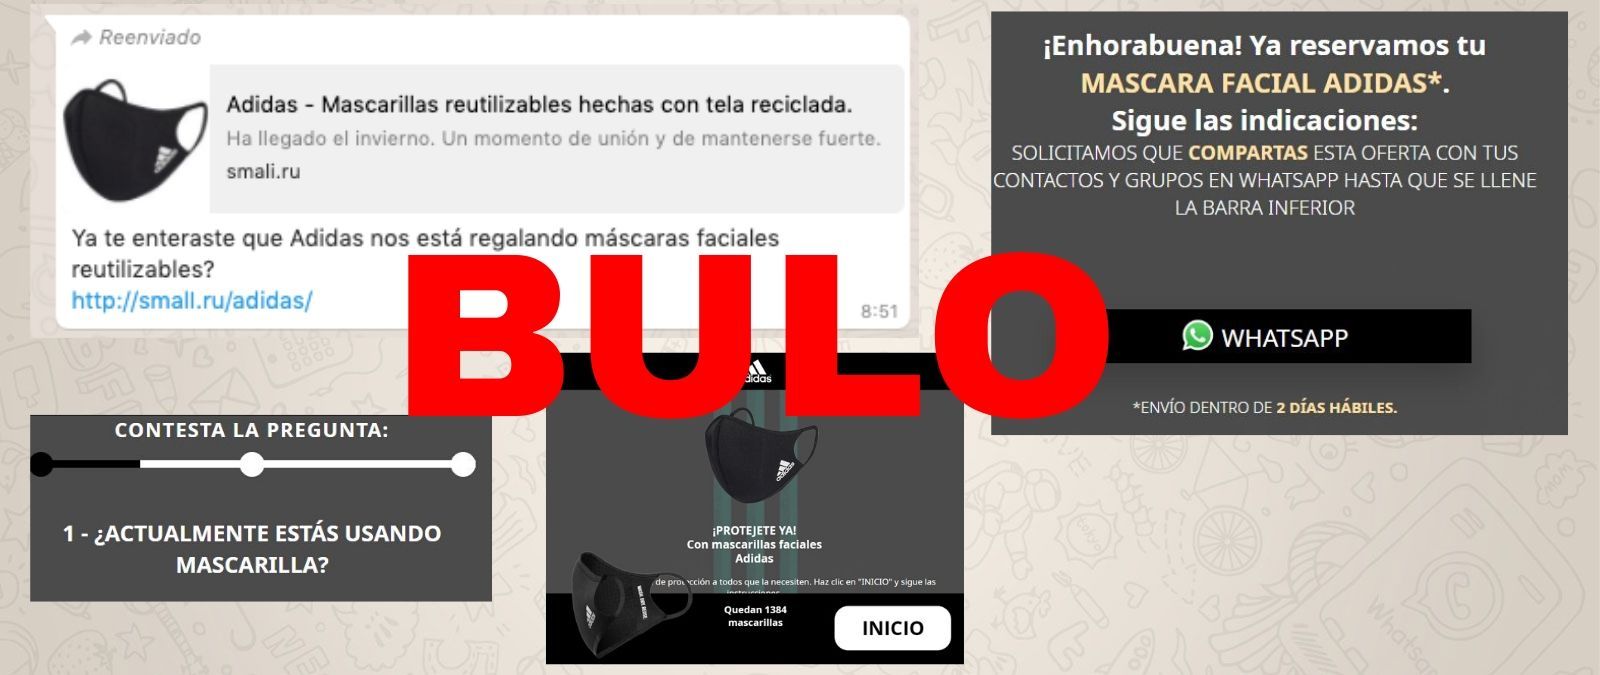 Adidas no está regalando mascarillas reutilizables a través de esta web: es 'phishing'